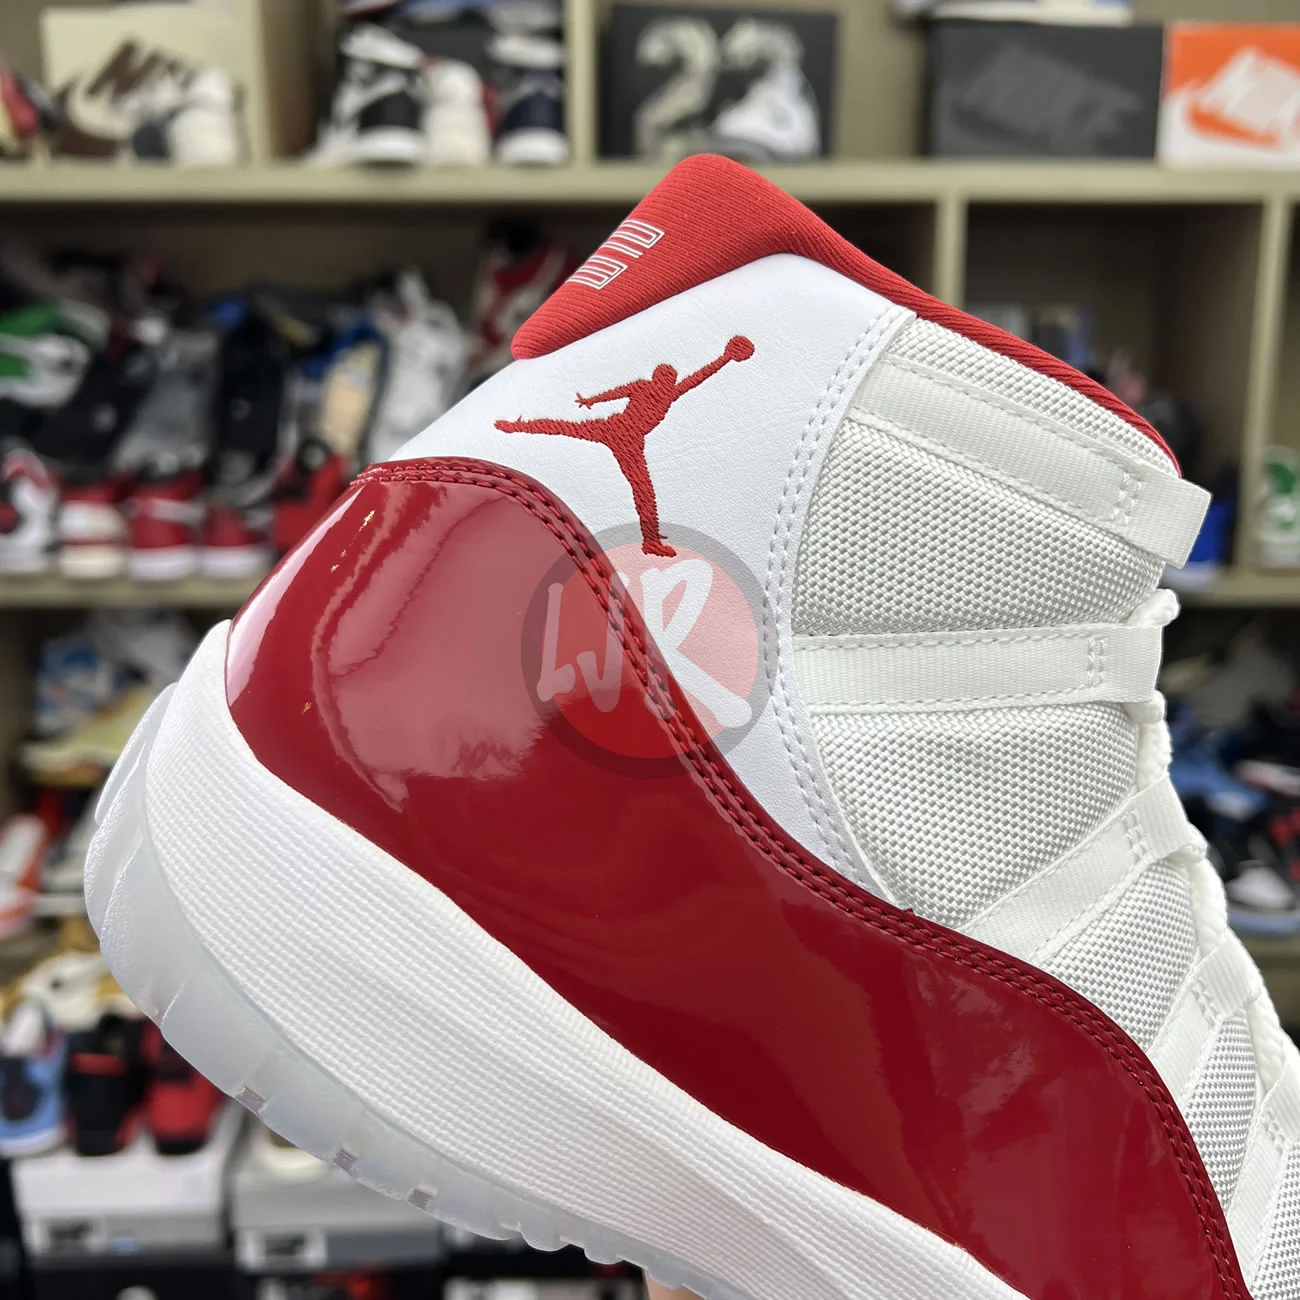 Air Jordan 11 Retro Cherry 2022 Ct8012 116 Ljr Sneakers (10) - bc-ljr.com